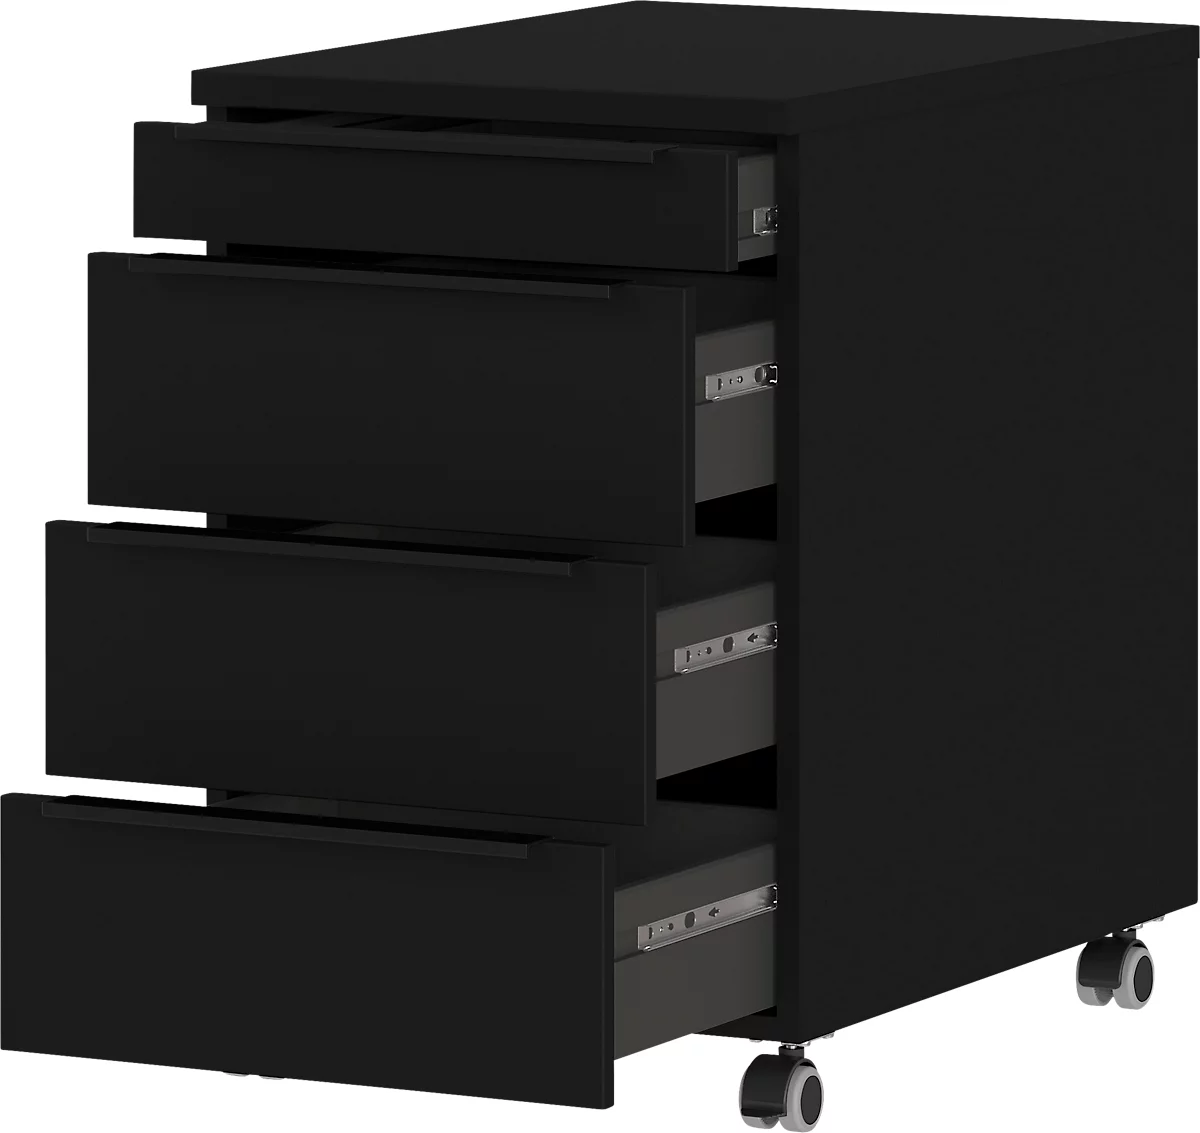 Rollcontainer, 4 Schubladen inkl. Utensilienfach, B 420 x T 600 x H 630 mm, schwarz